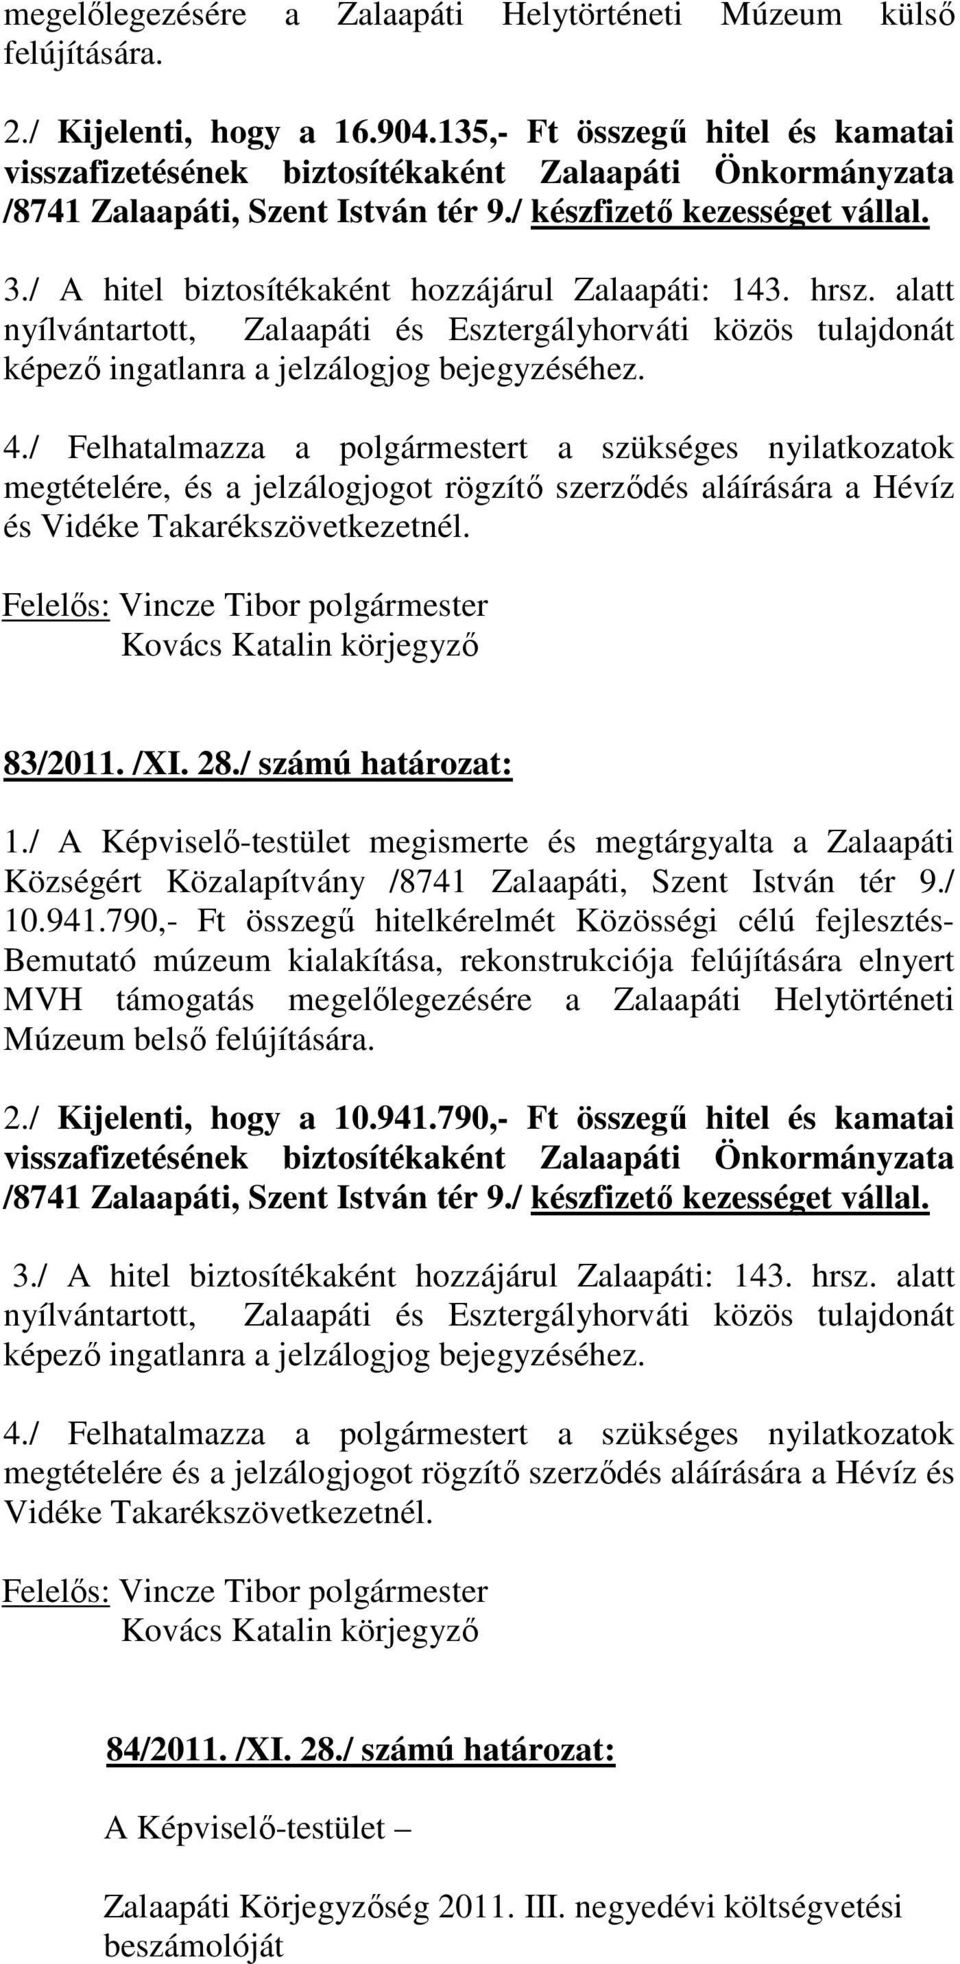 / A hitel biztosítékaként hozzájárul Zalaapáti: 143. hrsz. alatt nyílvántartott, Zalaapáti és Esztergályhorváti közös tulajdonát képezı ingatlanra a jelzálogjog bejegyzéséhez. 4.